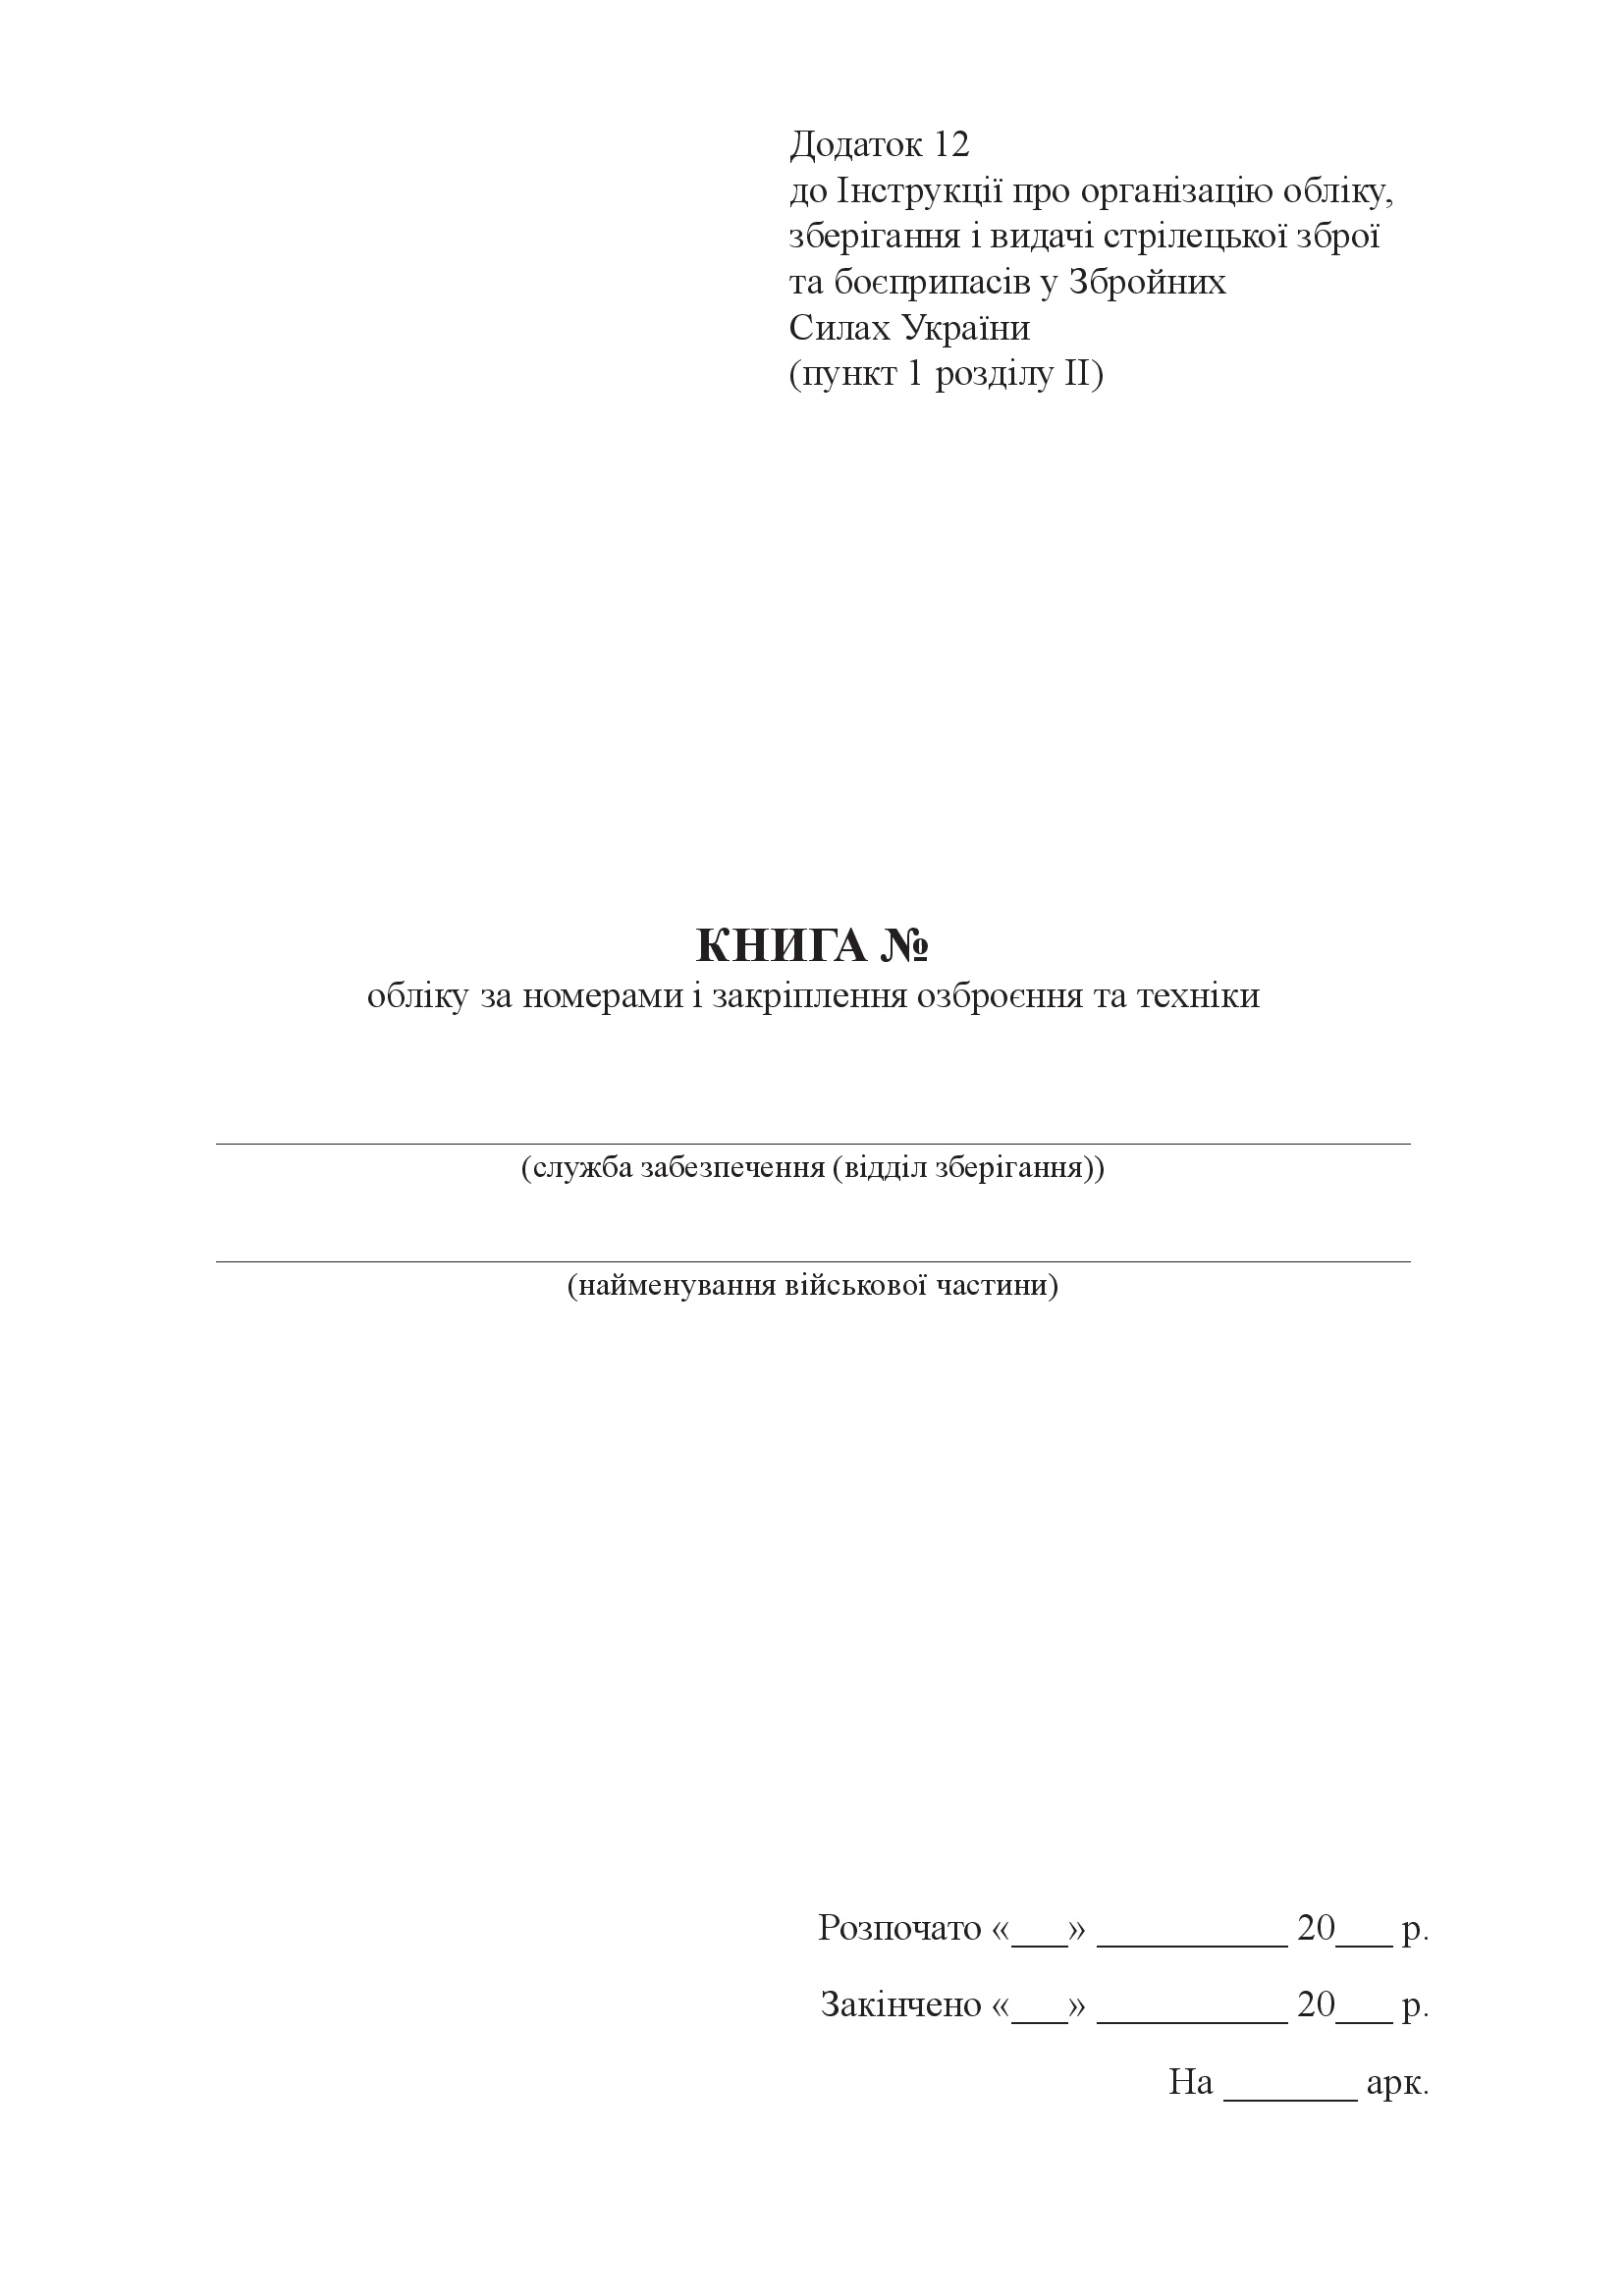 Книга обліку за номерами і закріплення озброєння та техніки, додаток 12. Автор — Міністерство оборони України. 